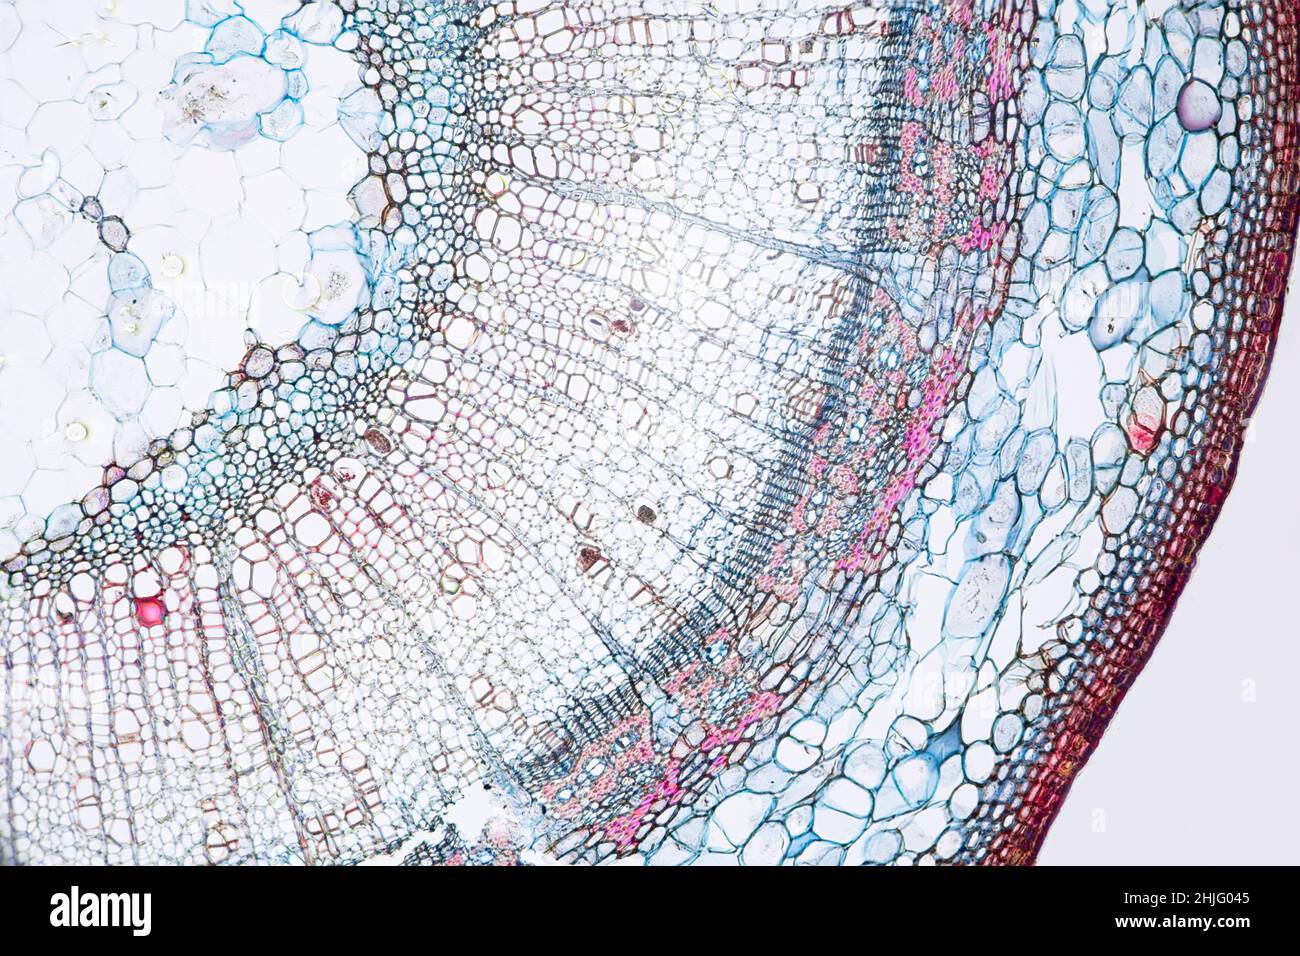 Tilia (Pflanze) junger Stamm, wie durch ein Lichtmikroskop betrachtet Stockfoto